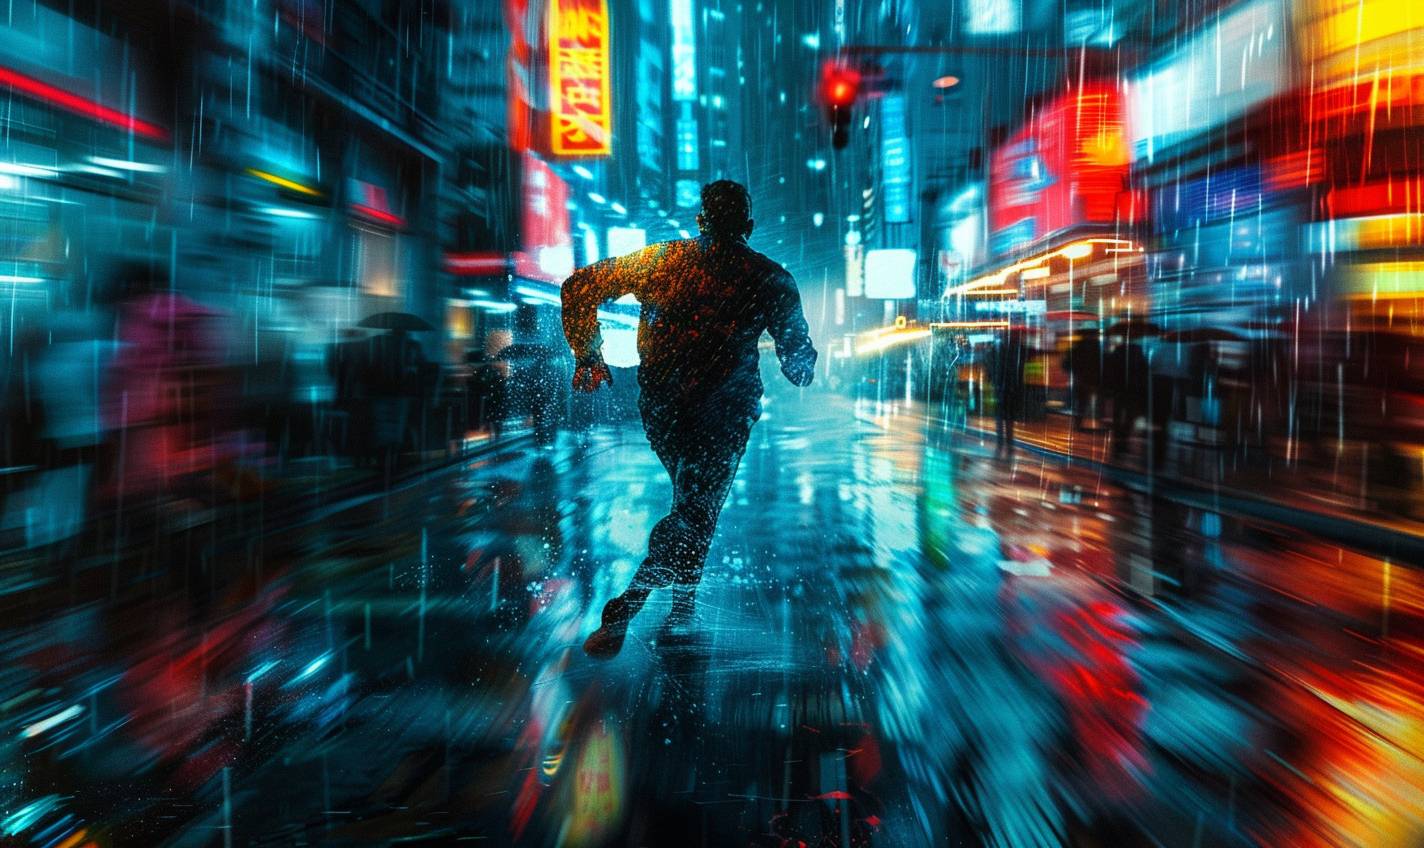 夜、雨にぬれた街を駆け抜ける男性。湿った舗道に反射するネオンライトが、彼の決意の表情を照らし出している。